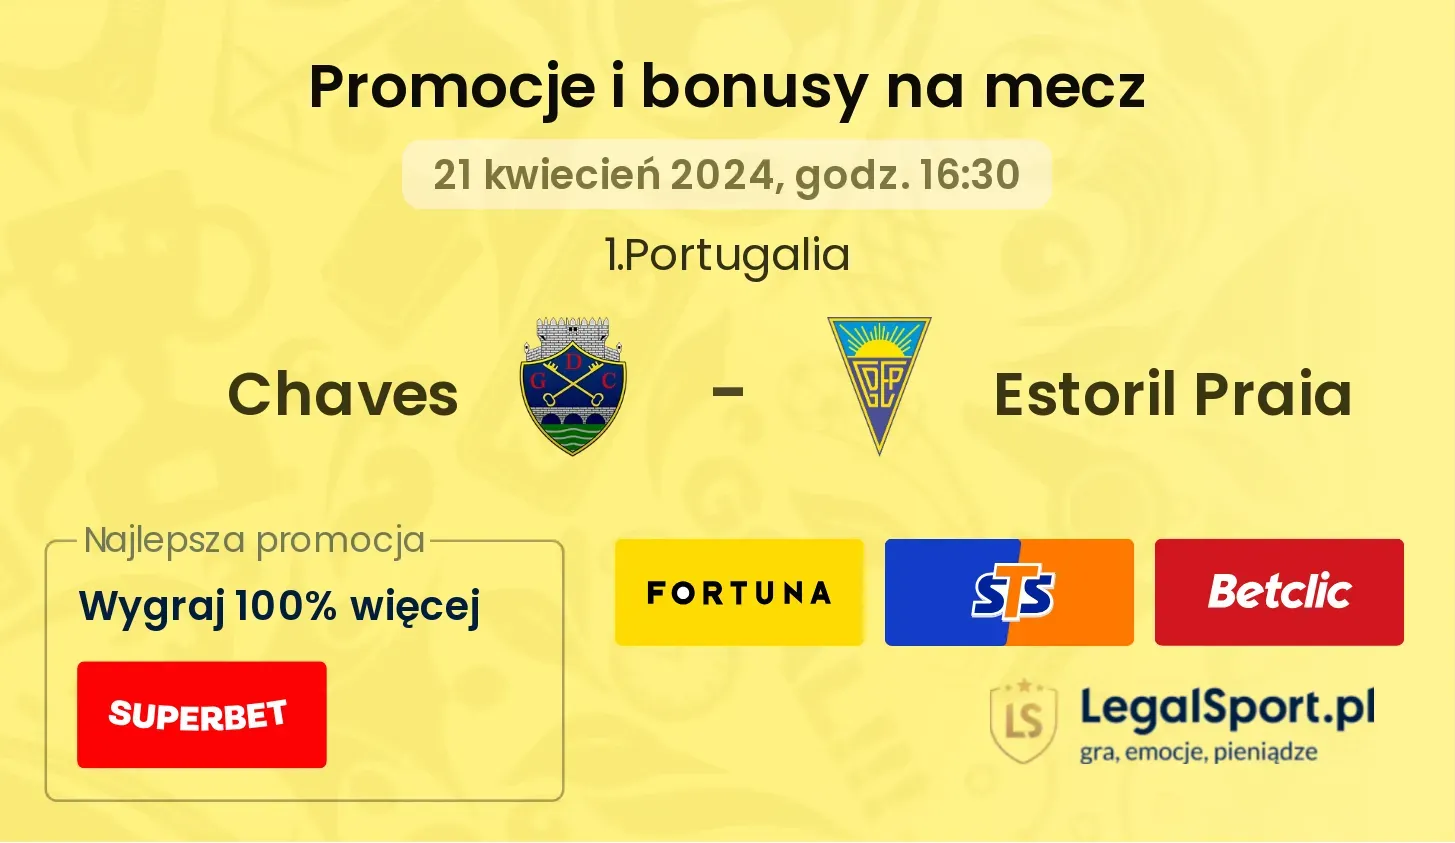 Chaves - Estoril Praia promocje bonusy na mecz